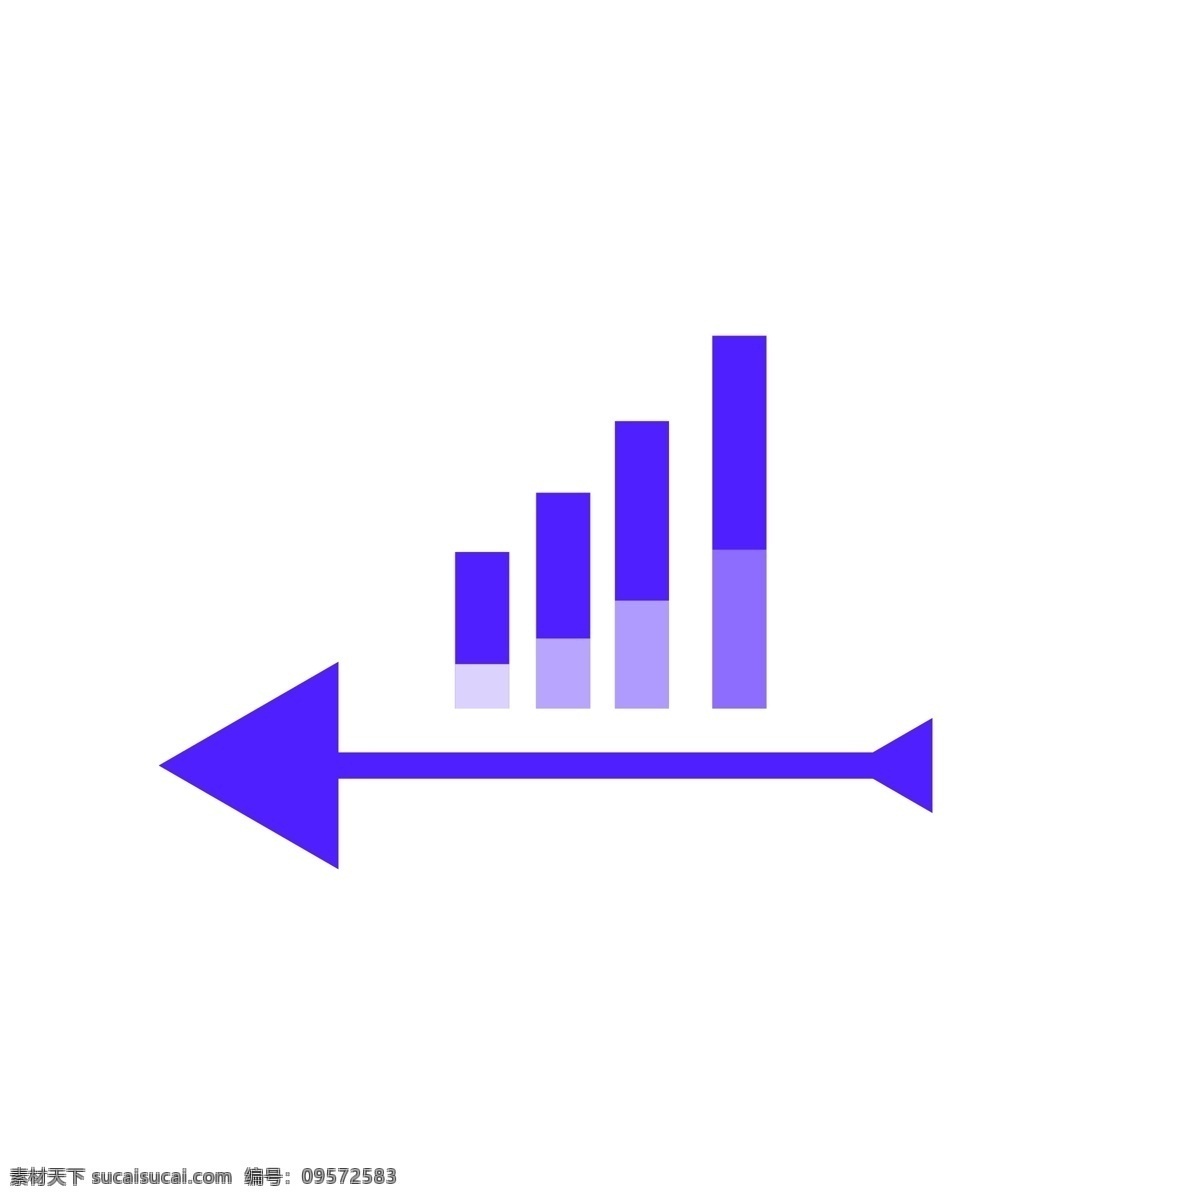 商务 矢量 数据 紫色 柱状 箭头 ppt图表 信息图表卡通 信息图表装饰 柱状图 彩色信息图表 矢量信息图表 商务图表 数据信息 环形图表 时间轴 科技